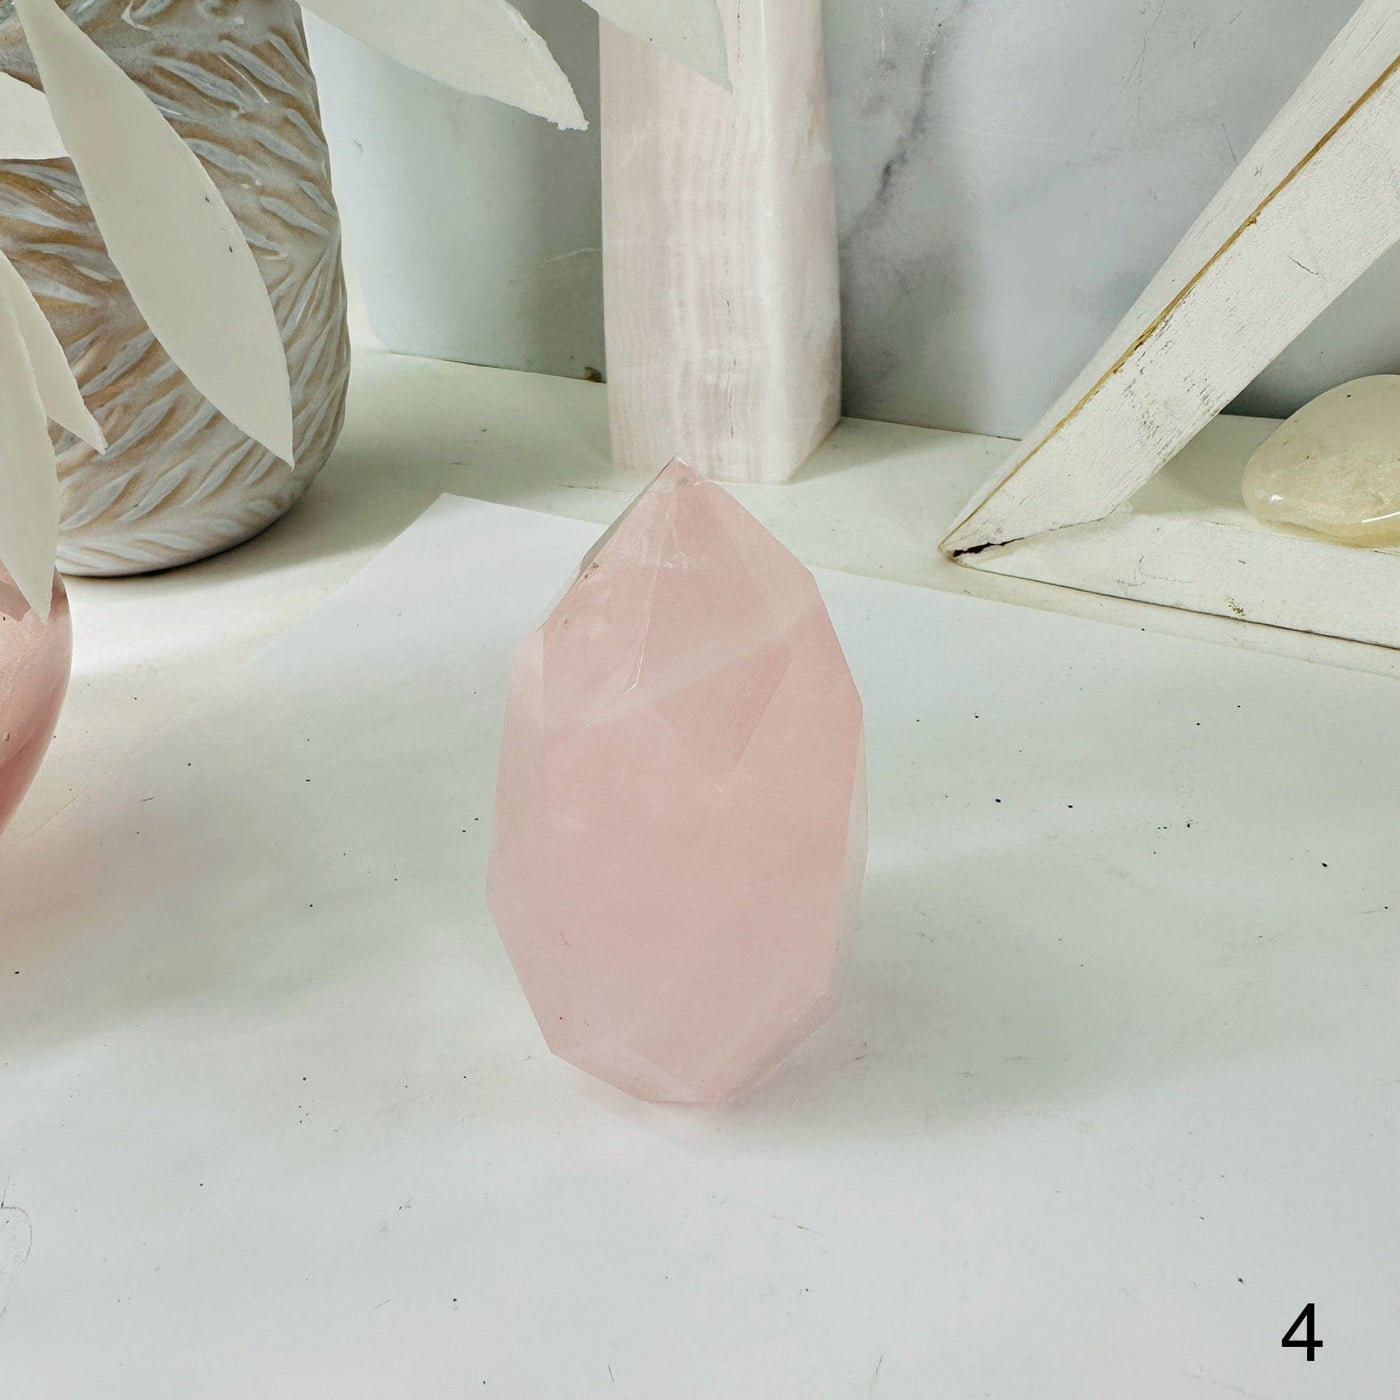  Rose Quartz Faceted Crystal Egg Point - You Choose - variant 4 labeled